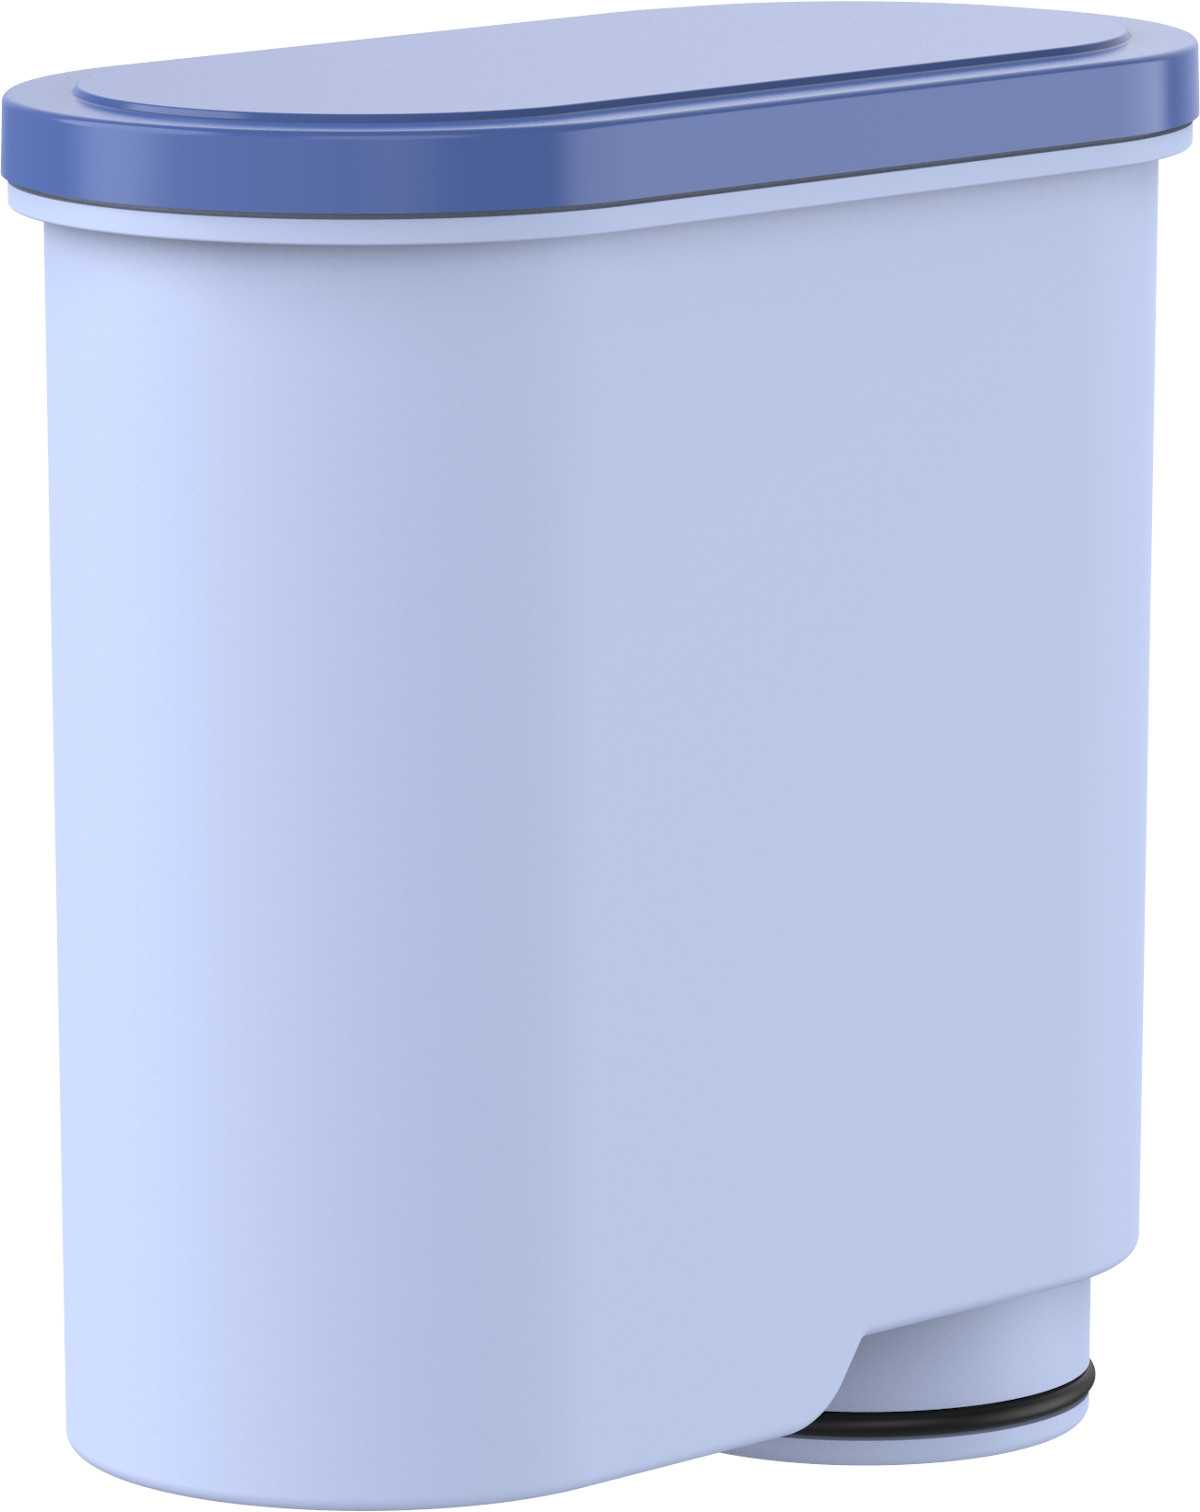 COMEDES 9er Set Wasserfilter einsetzbar CA6903/22 Wasserfilter Comedes statt AquaClean